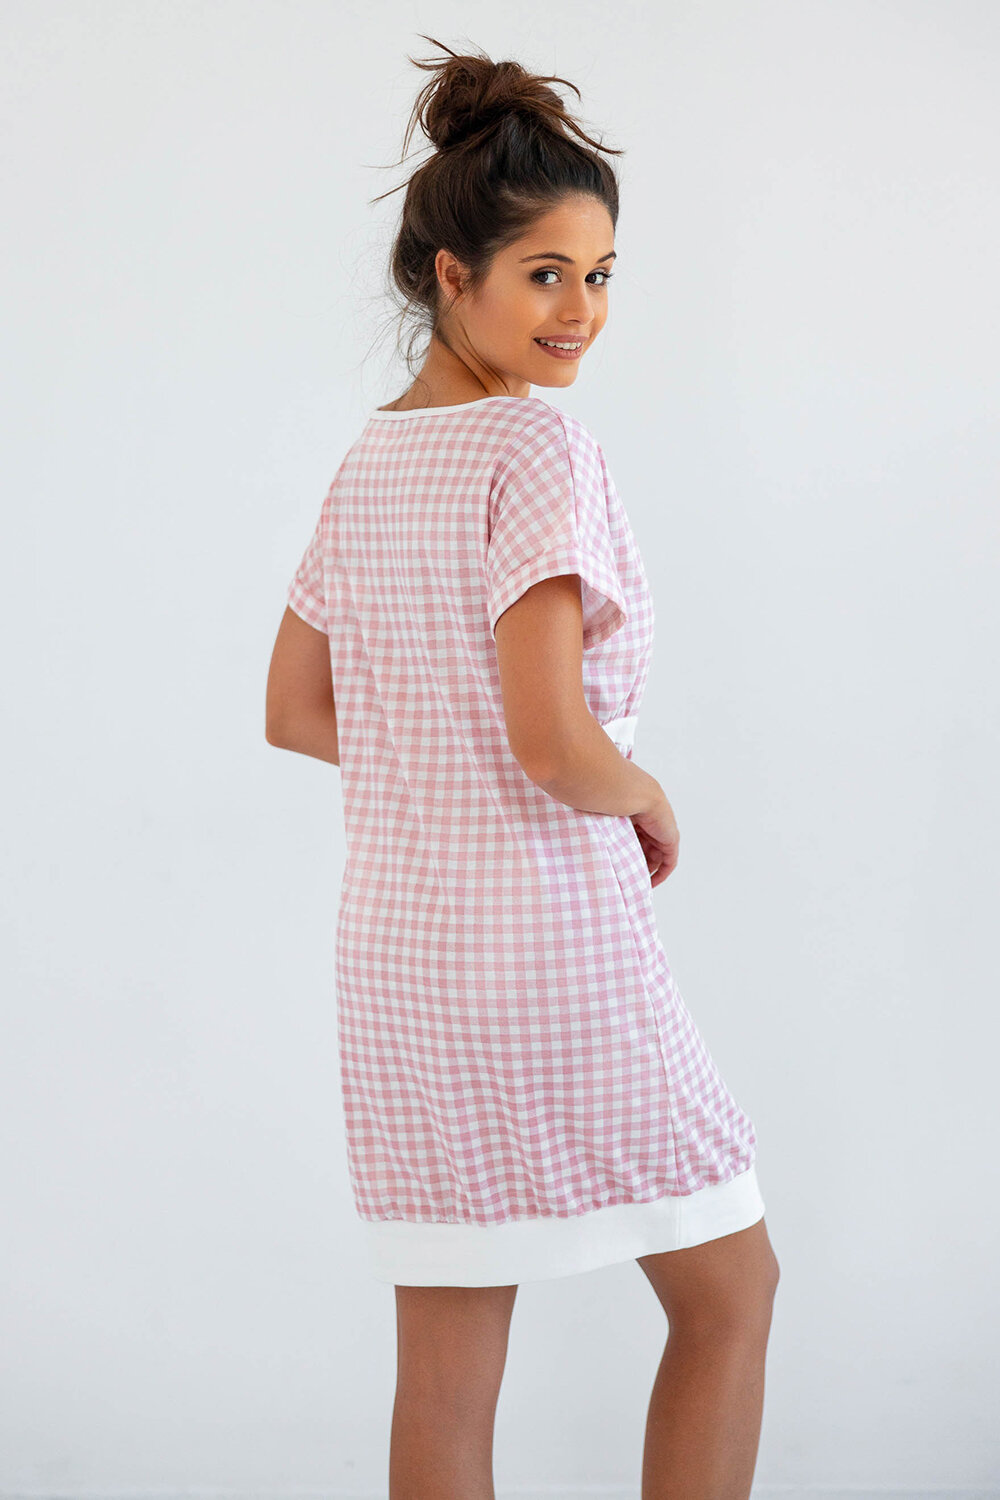 Сорочка женская SENSIS Annika, розовый, хлопок 100% (Размер: S) - фотография № 2